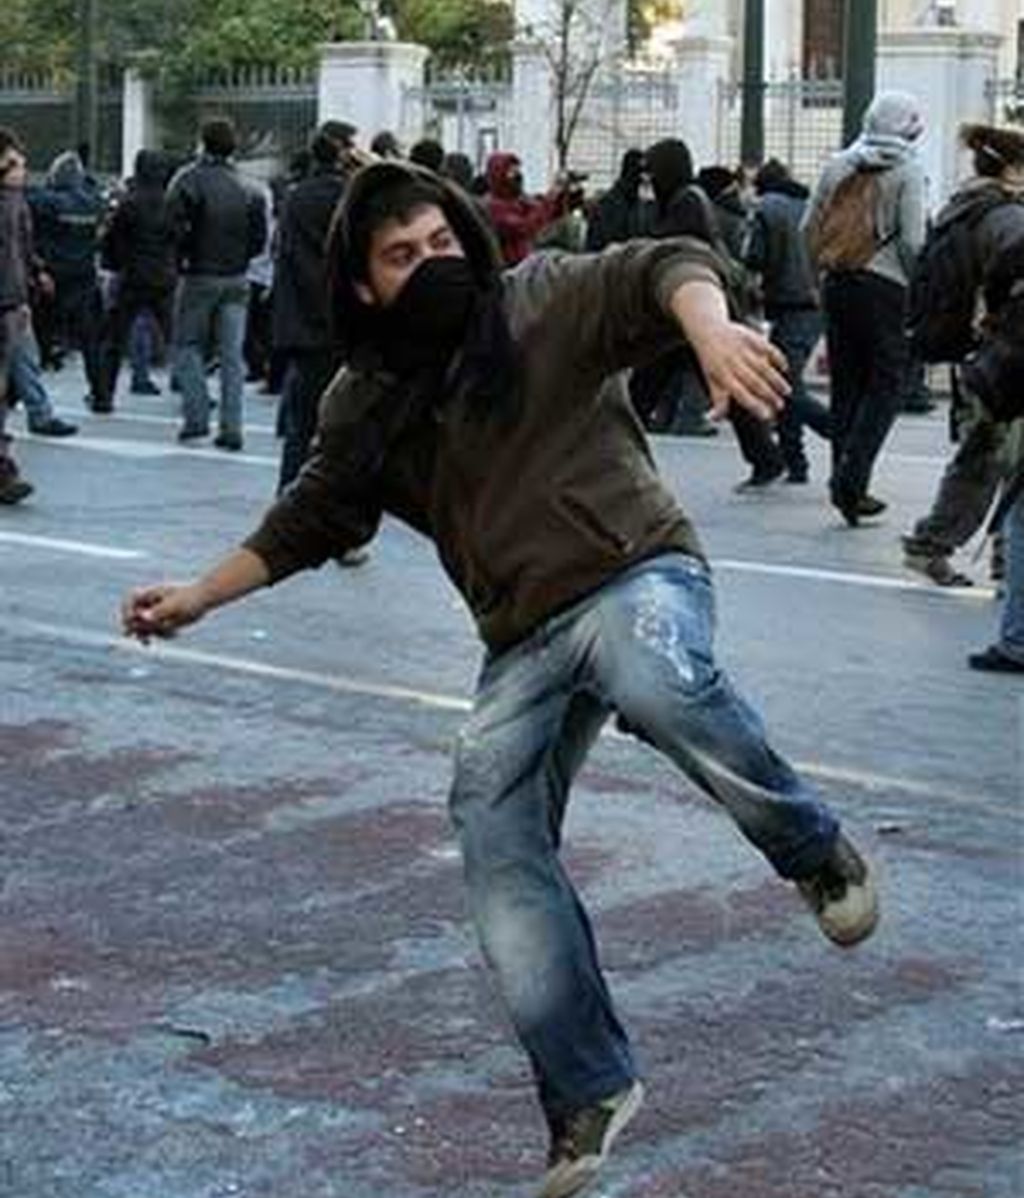 Disturbios en Grecia